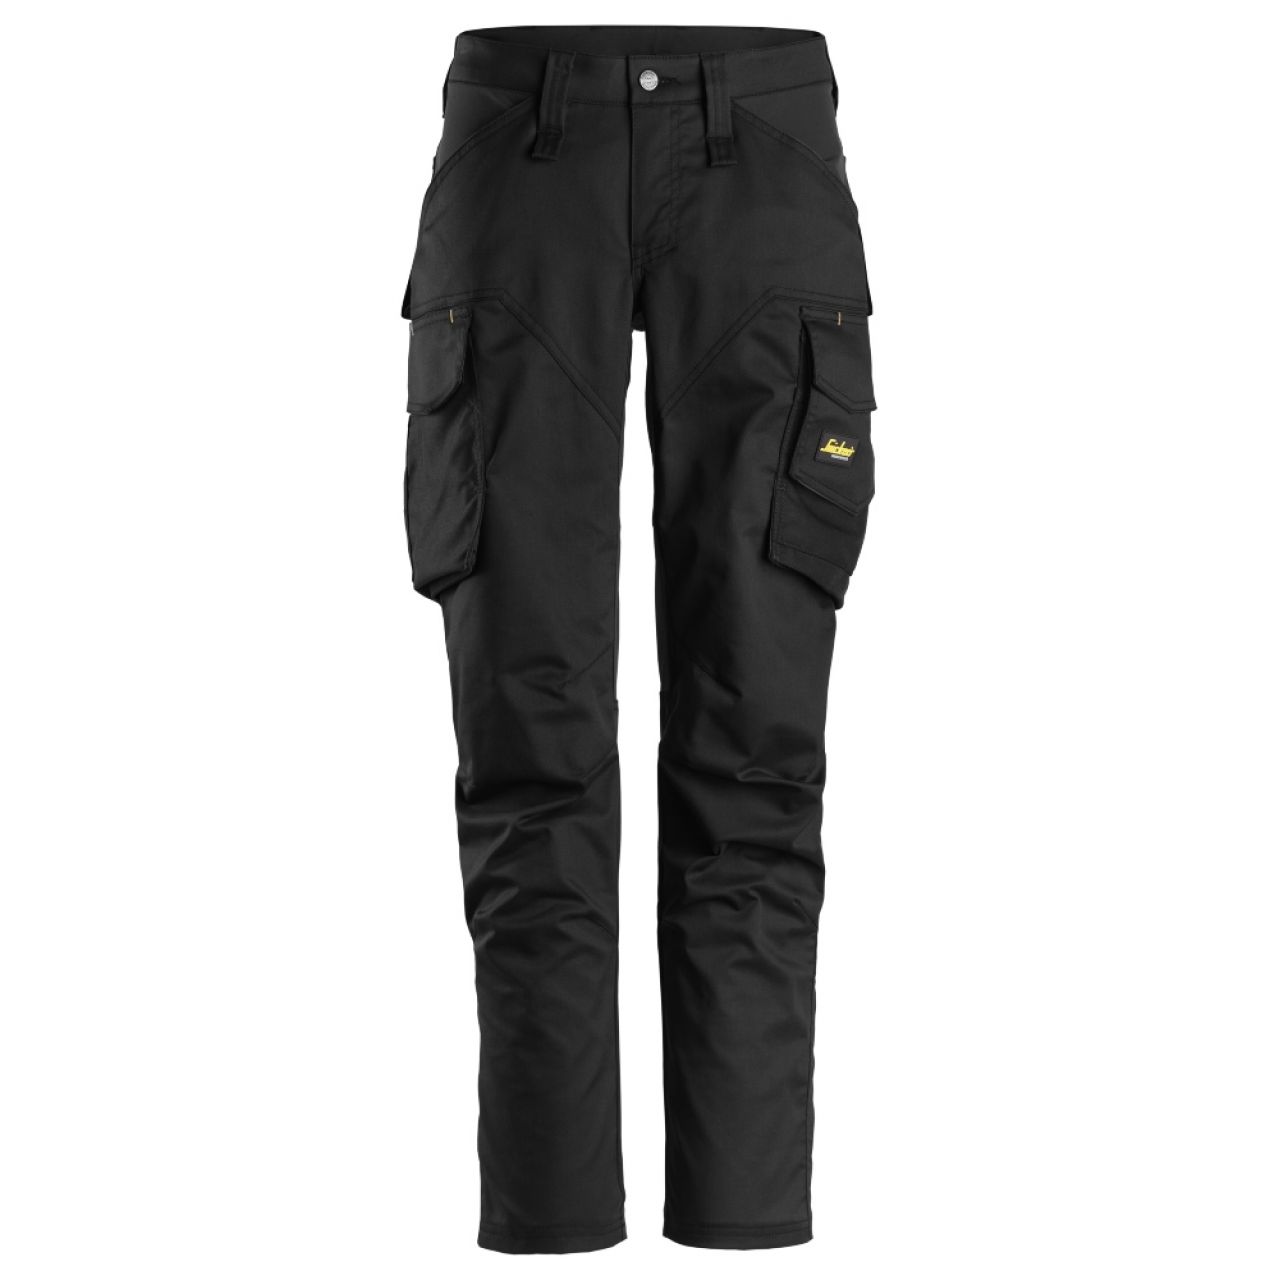 6703 Pantalones largos de trabajo elásticos para mujer con bolsillos para rodilleras AllroundWork negro talla 36